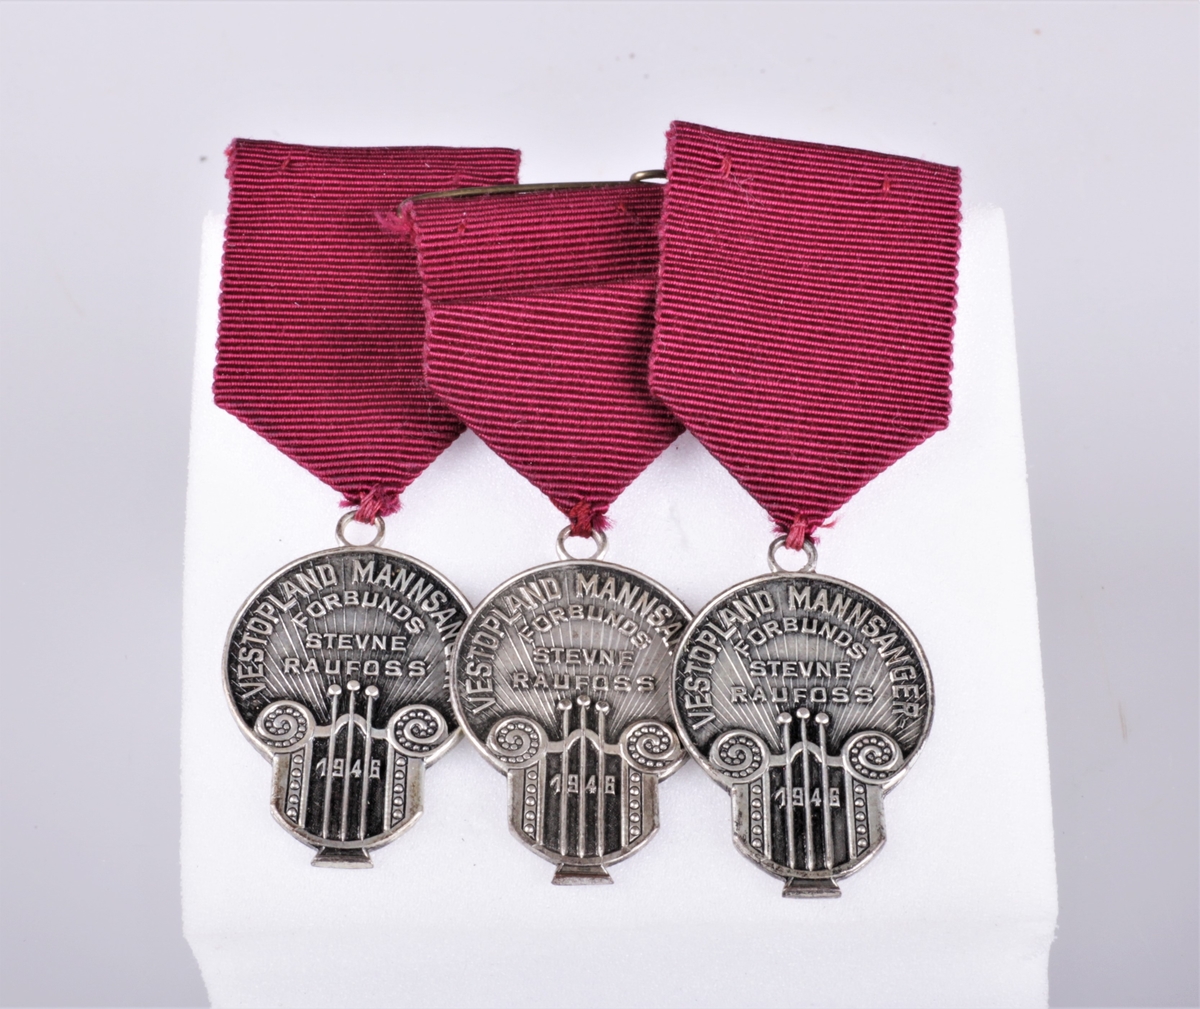 Tre like minnemedaljer av sølvfarget metall med purpur festebånd. Innskift på medaljen